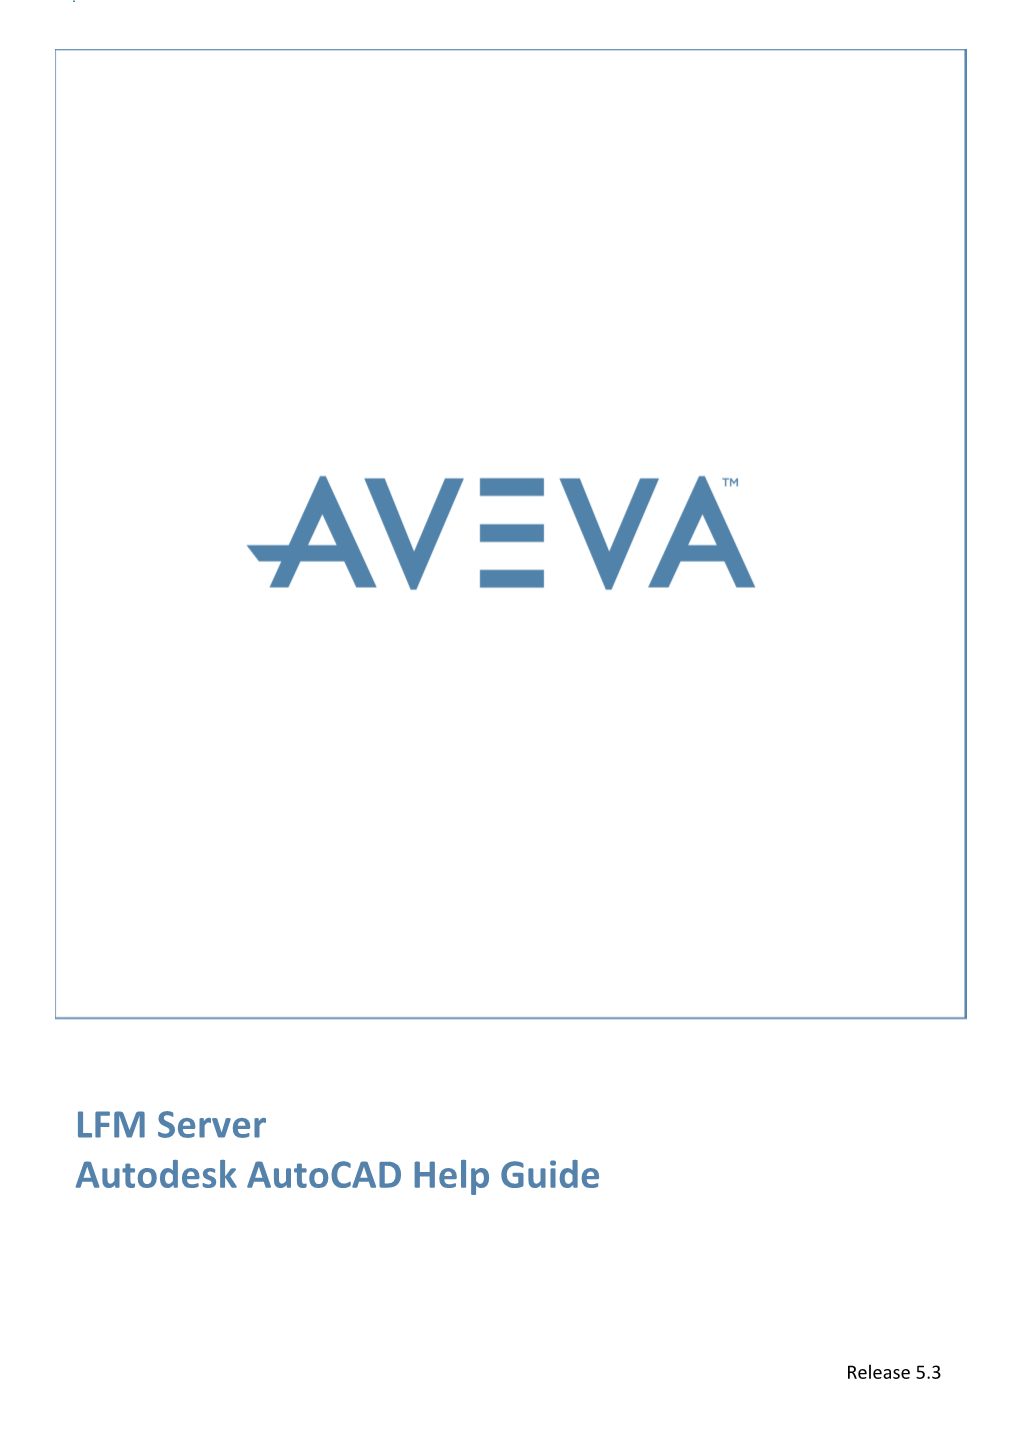 LFM Server Autodesk Autocad Help Guide